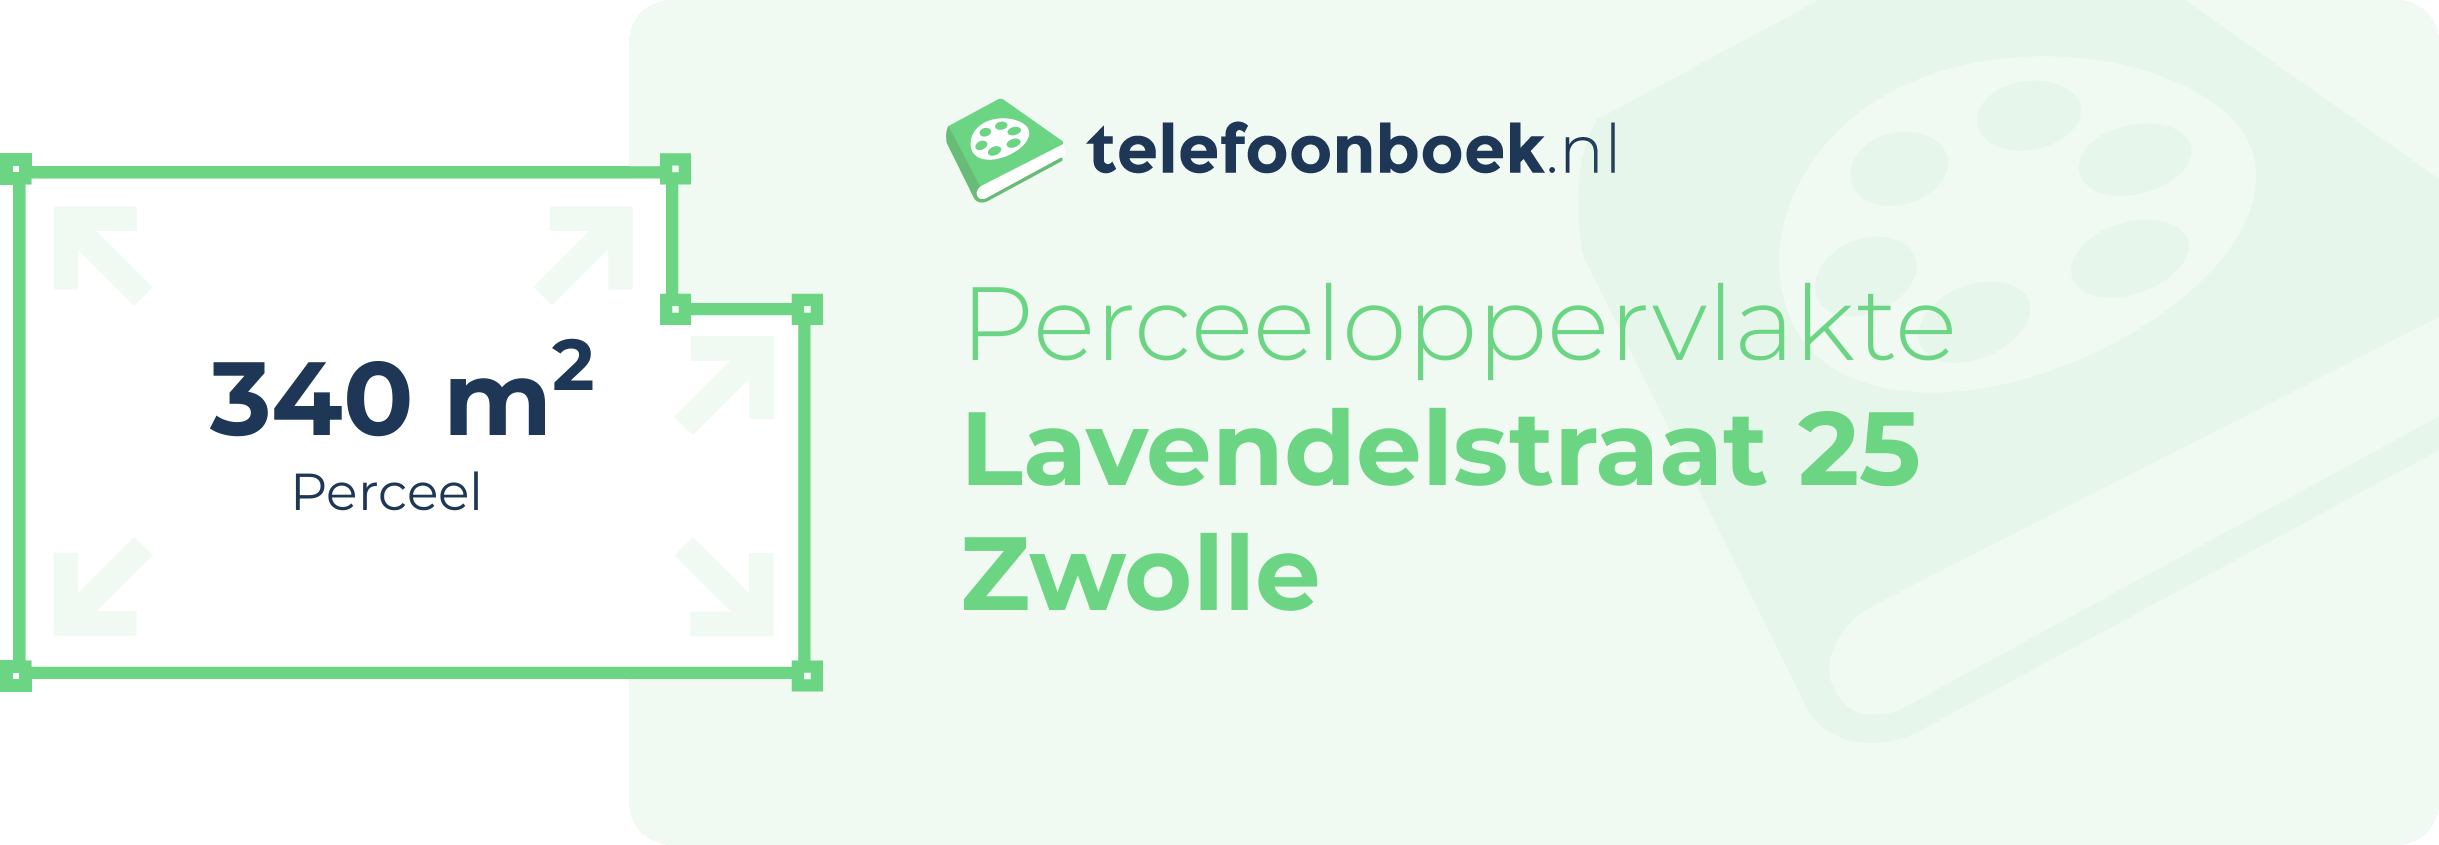 Perceeloppervlakte Lavendelstraat 25 Zwolle